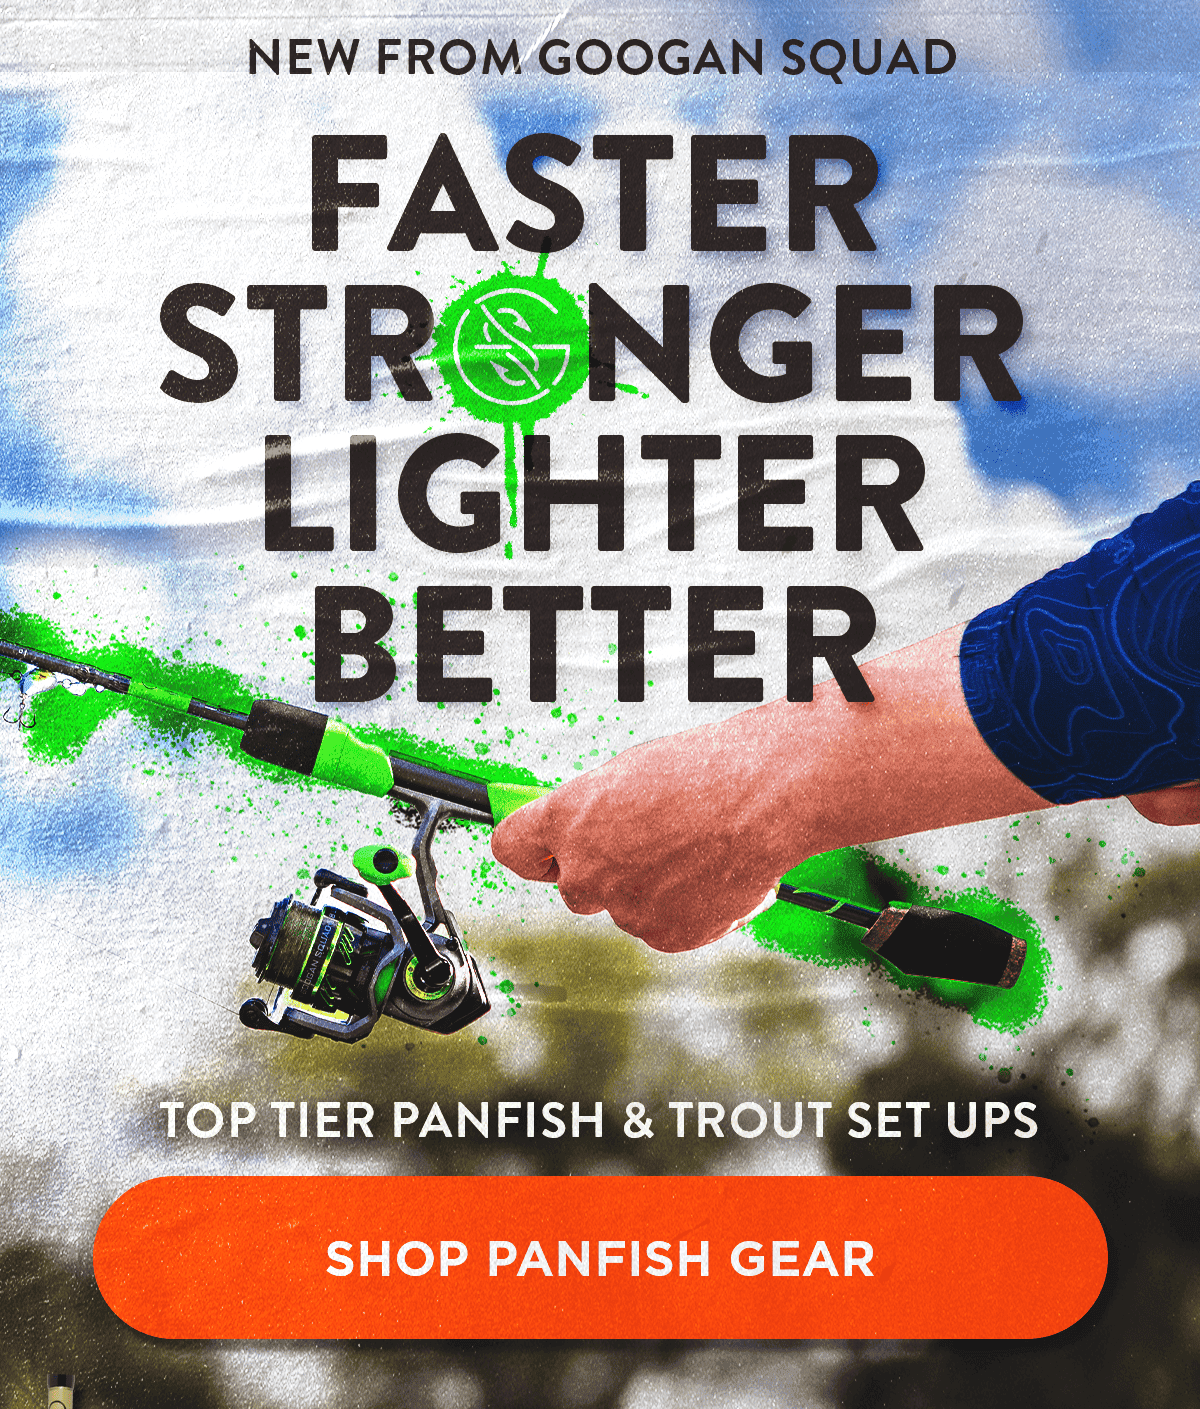 Top tier panfish & trout set ups. Shop panfish gear: